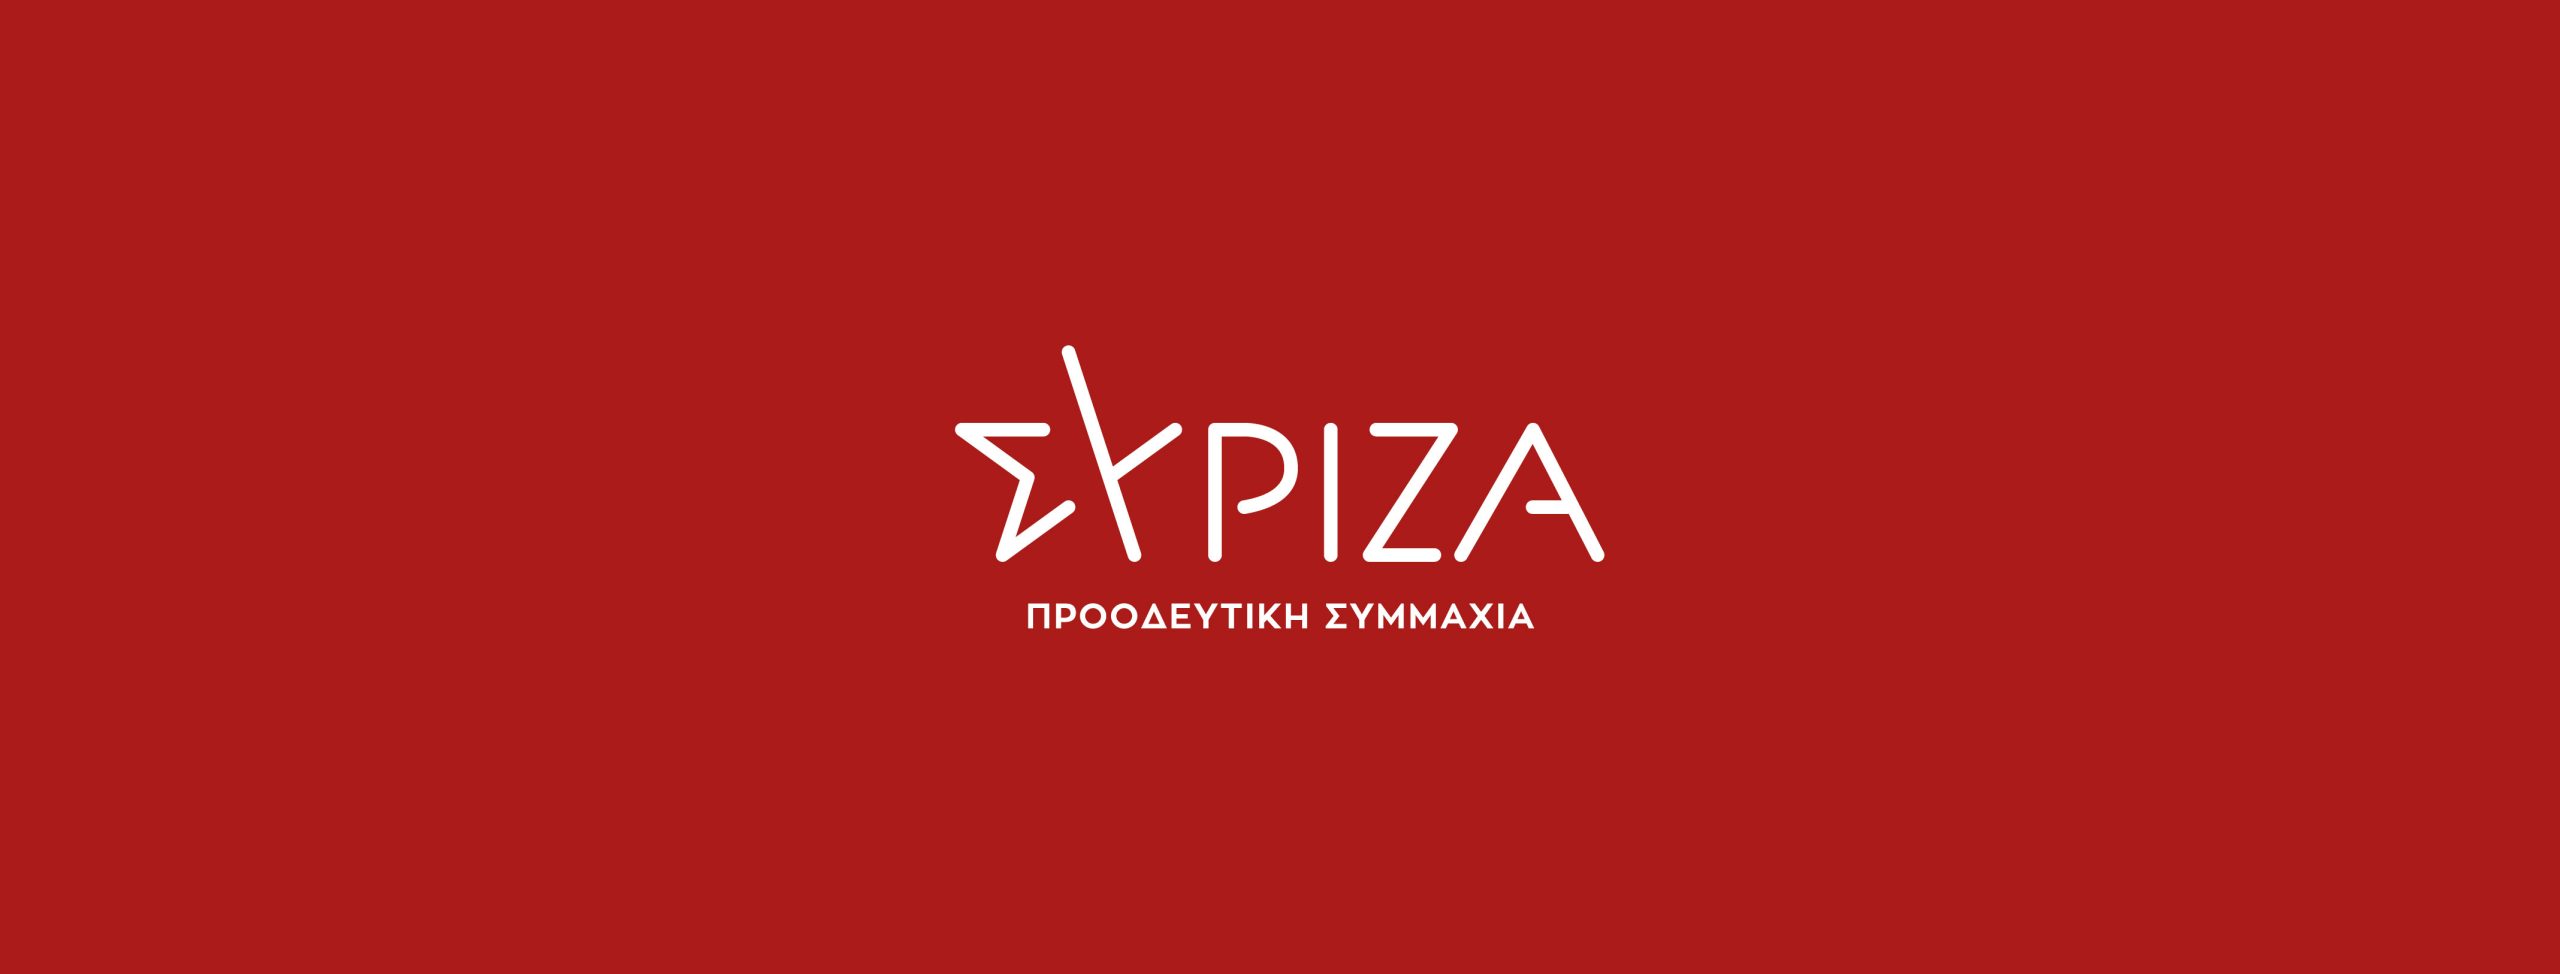 ΣΥΡΙΖΑ: «Ο πρωθυπουργός και οι φίλοι του είναι υπεράνω των μέτρων και των περιορισμών»